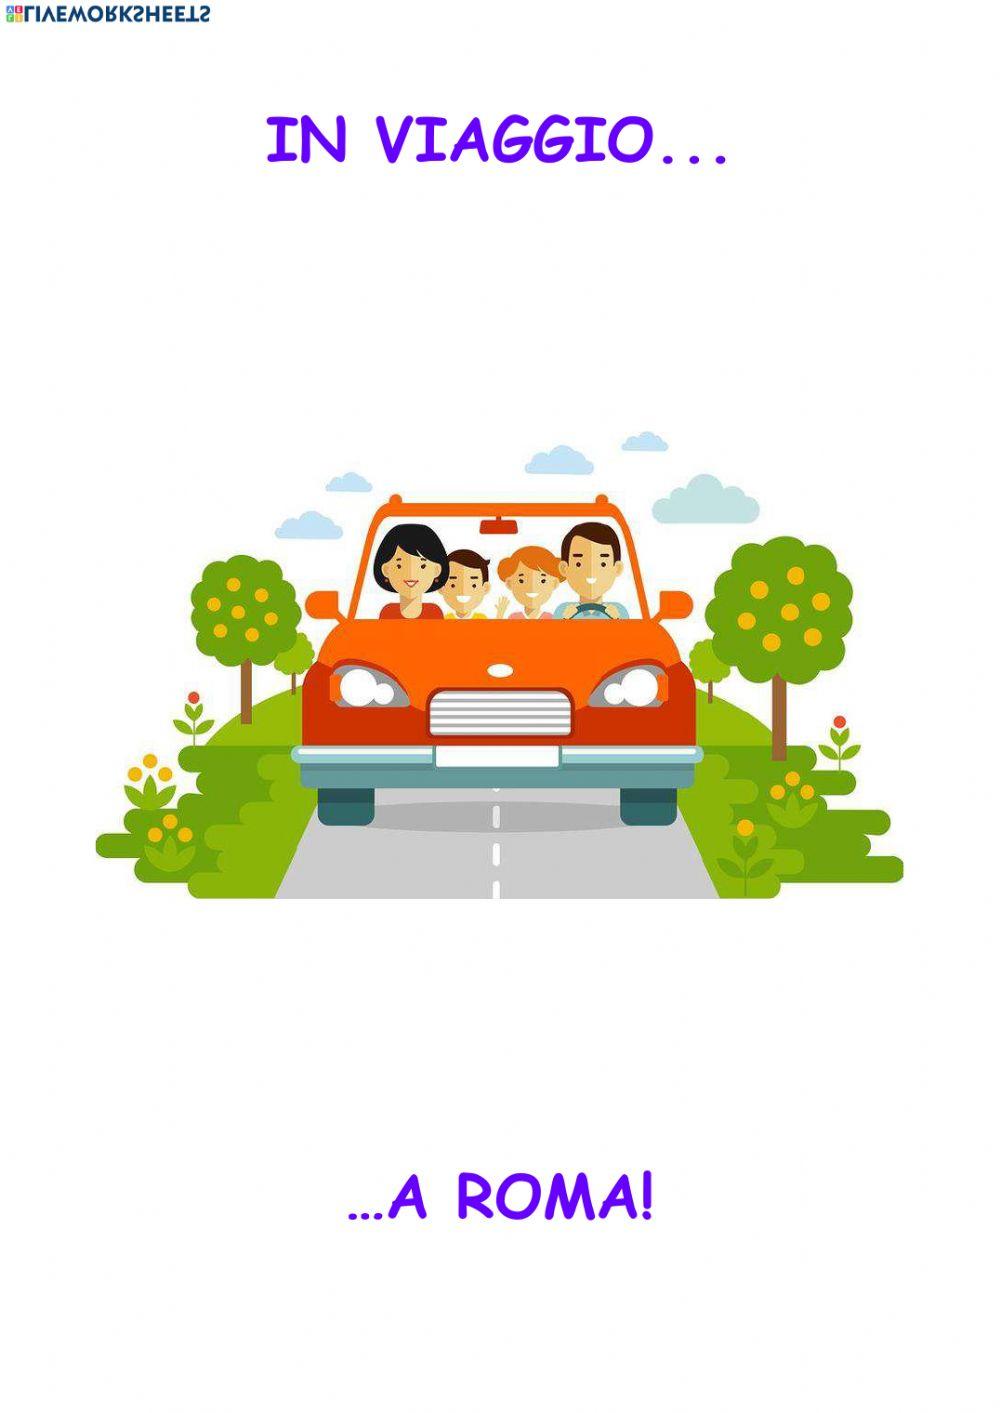 Viaggio a roma